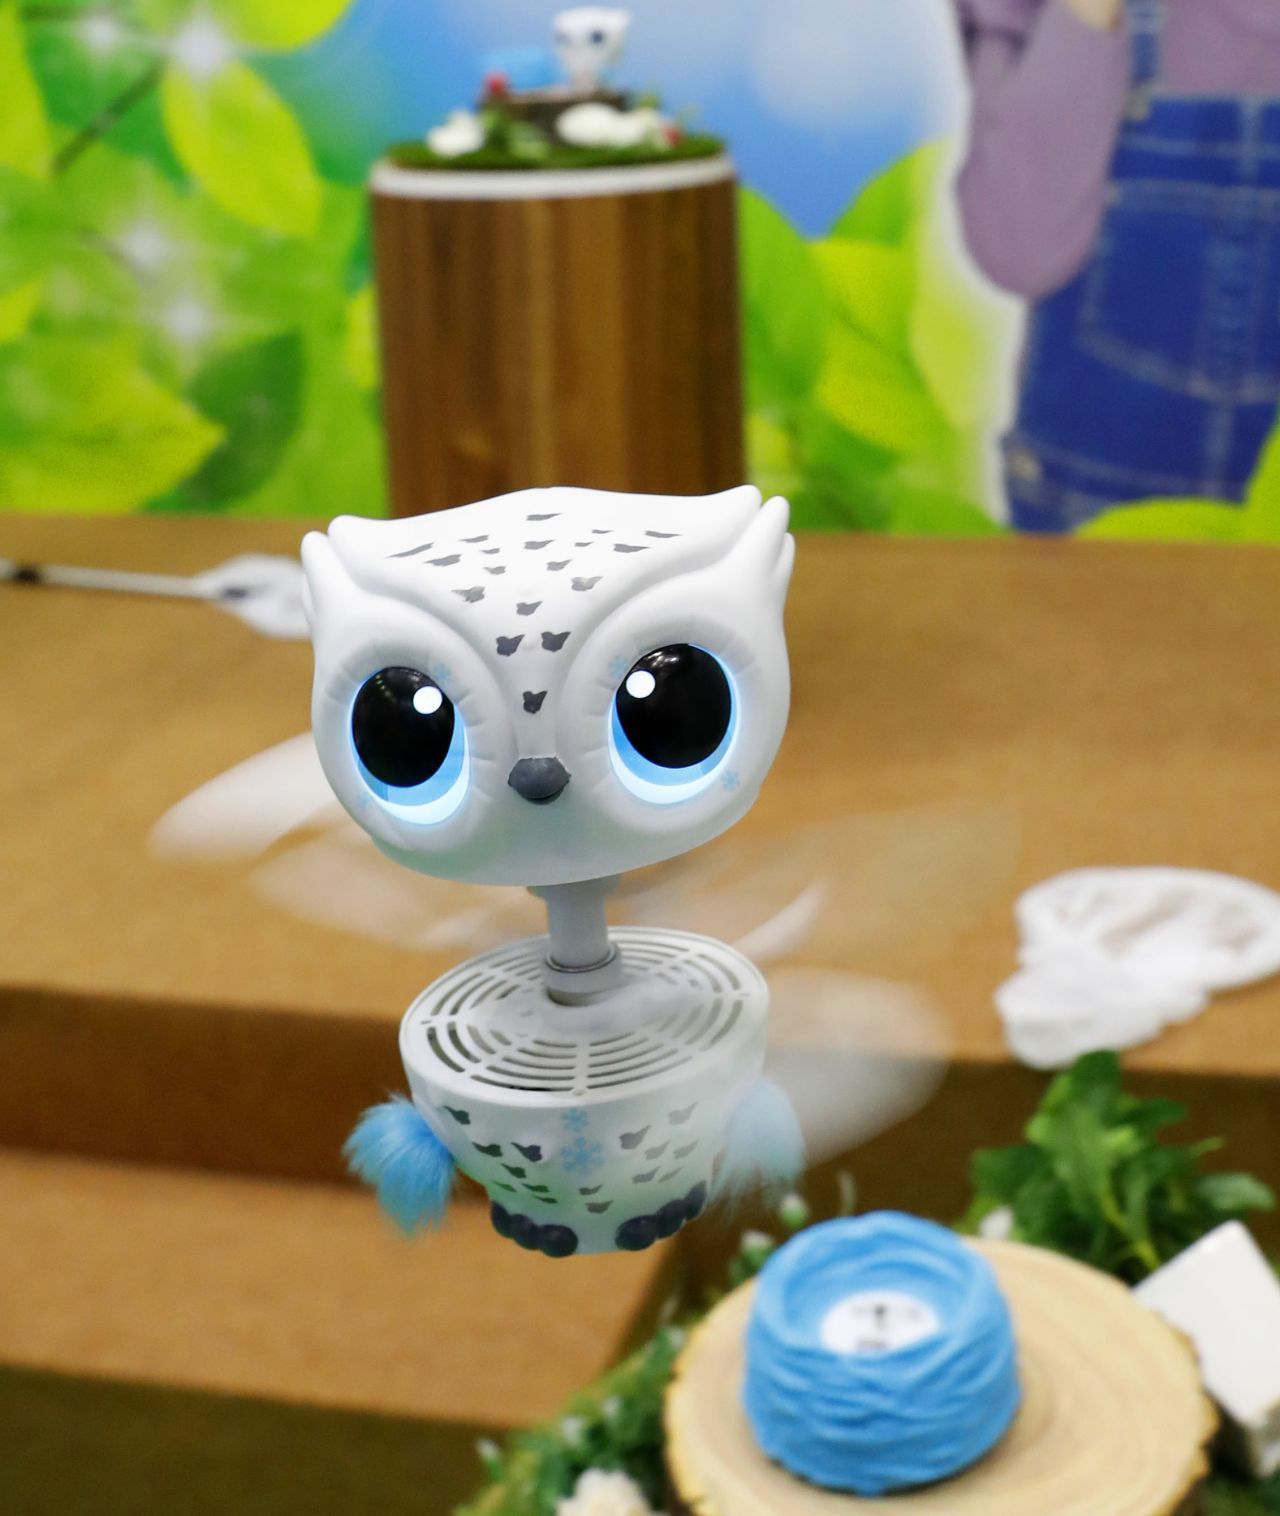 Tierische Spielzeug-Roboter sind inzwischen in unzähligen Varianten zu haben. Die Baby-Eule von Tomy kann sogar fliegen.